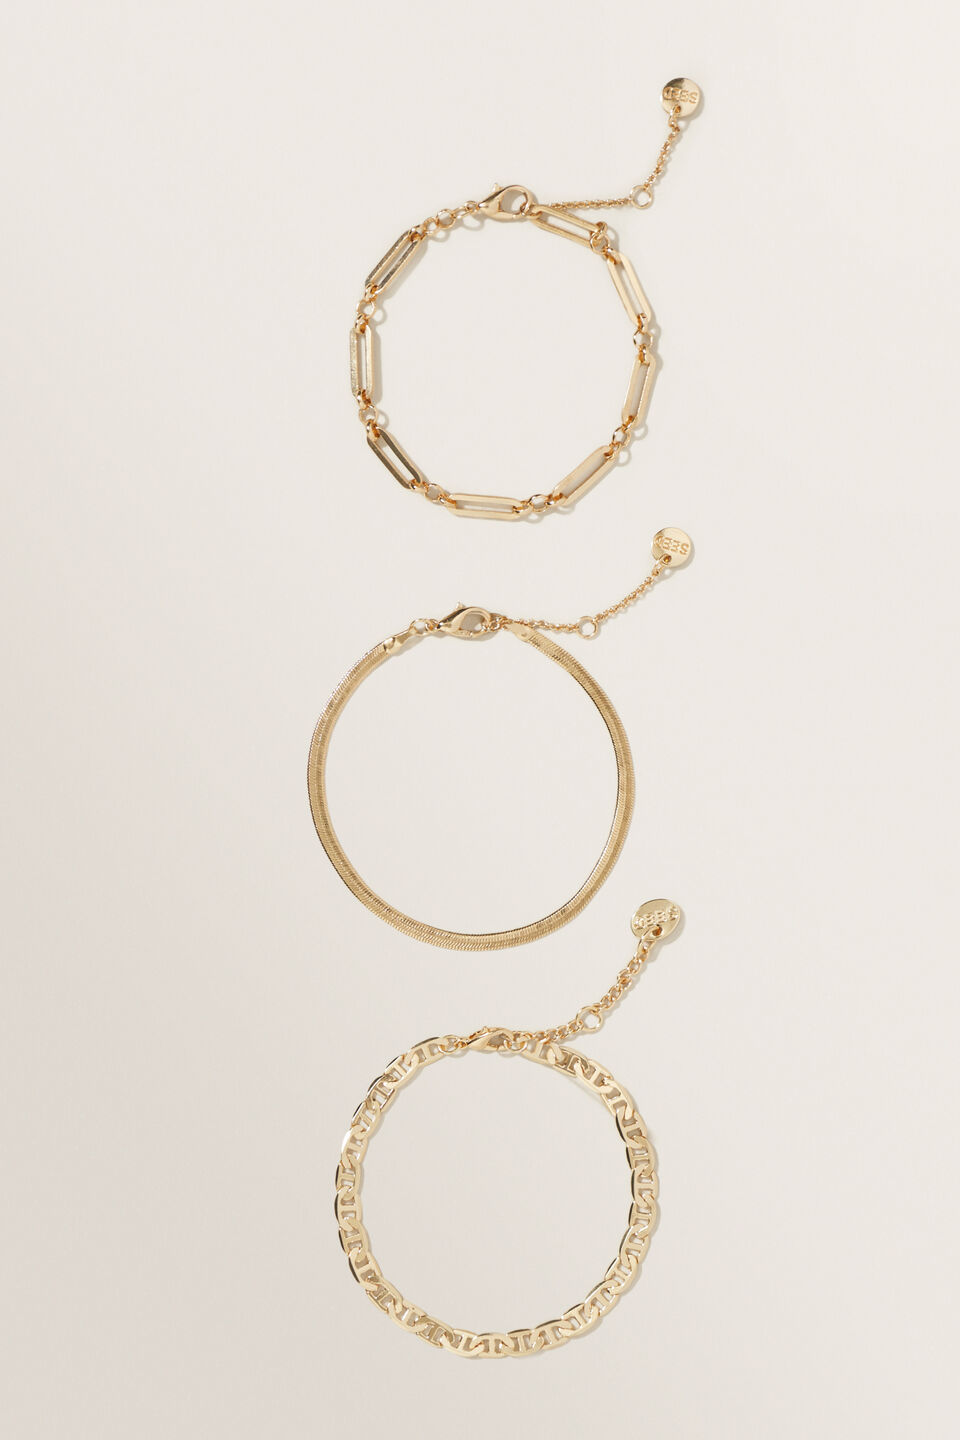 Paper Clip Chain Bracelets  Gold